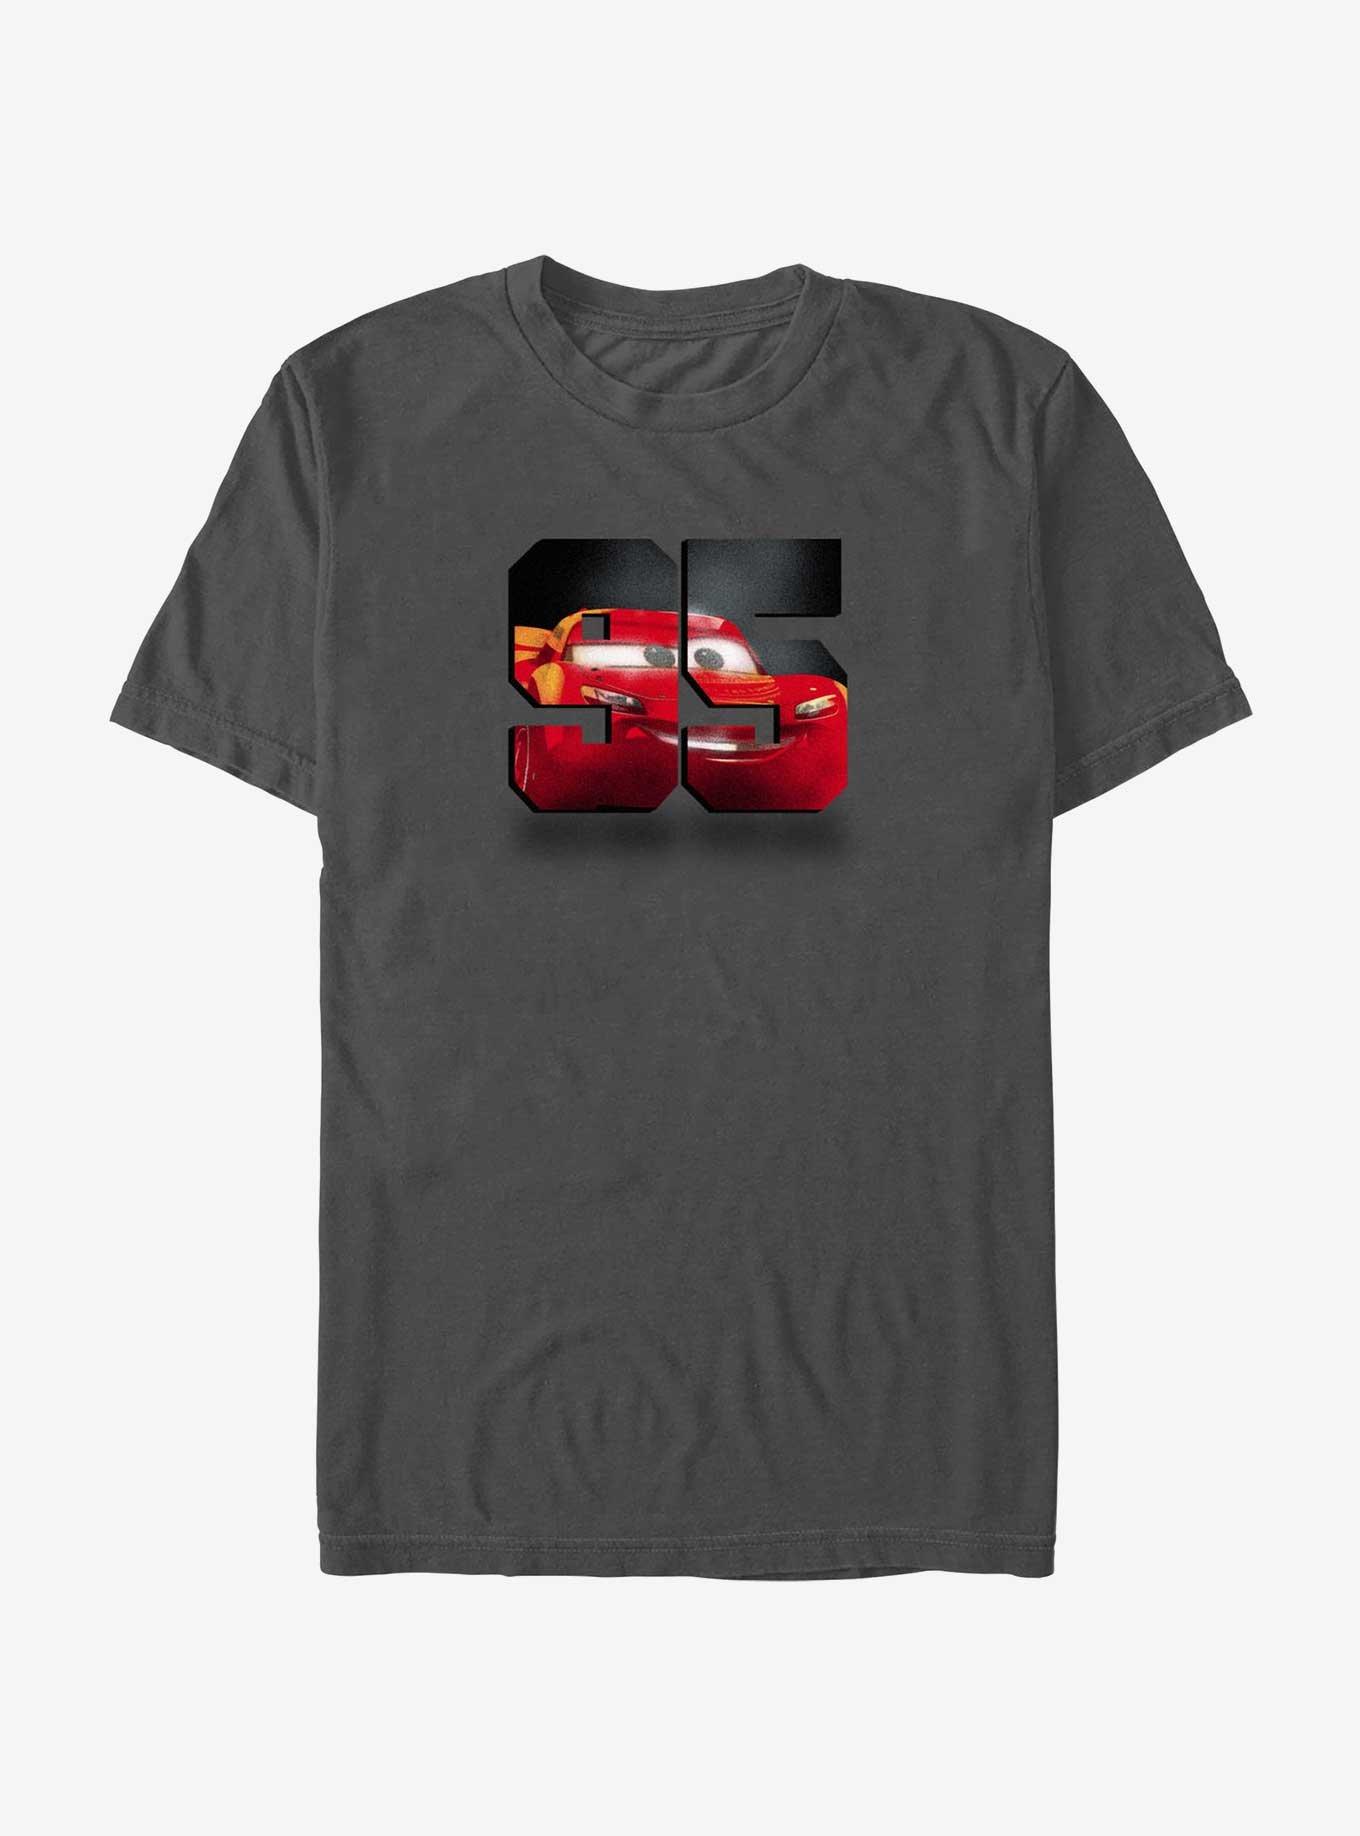 Disney Pixar Cars 95 South T-Shirt, CHARCOAL, hi-res